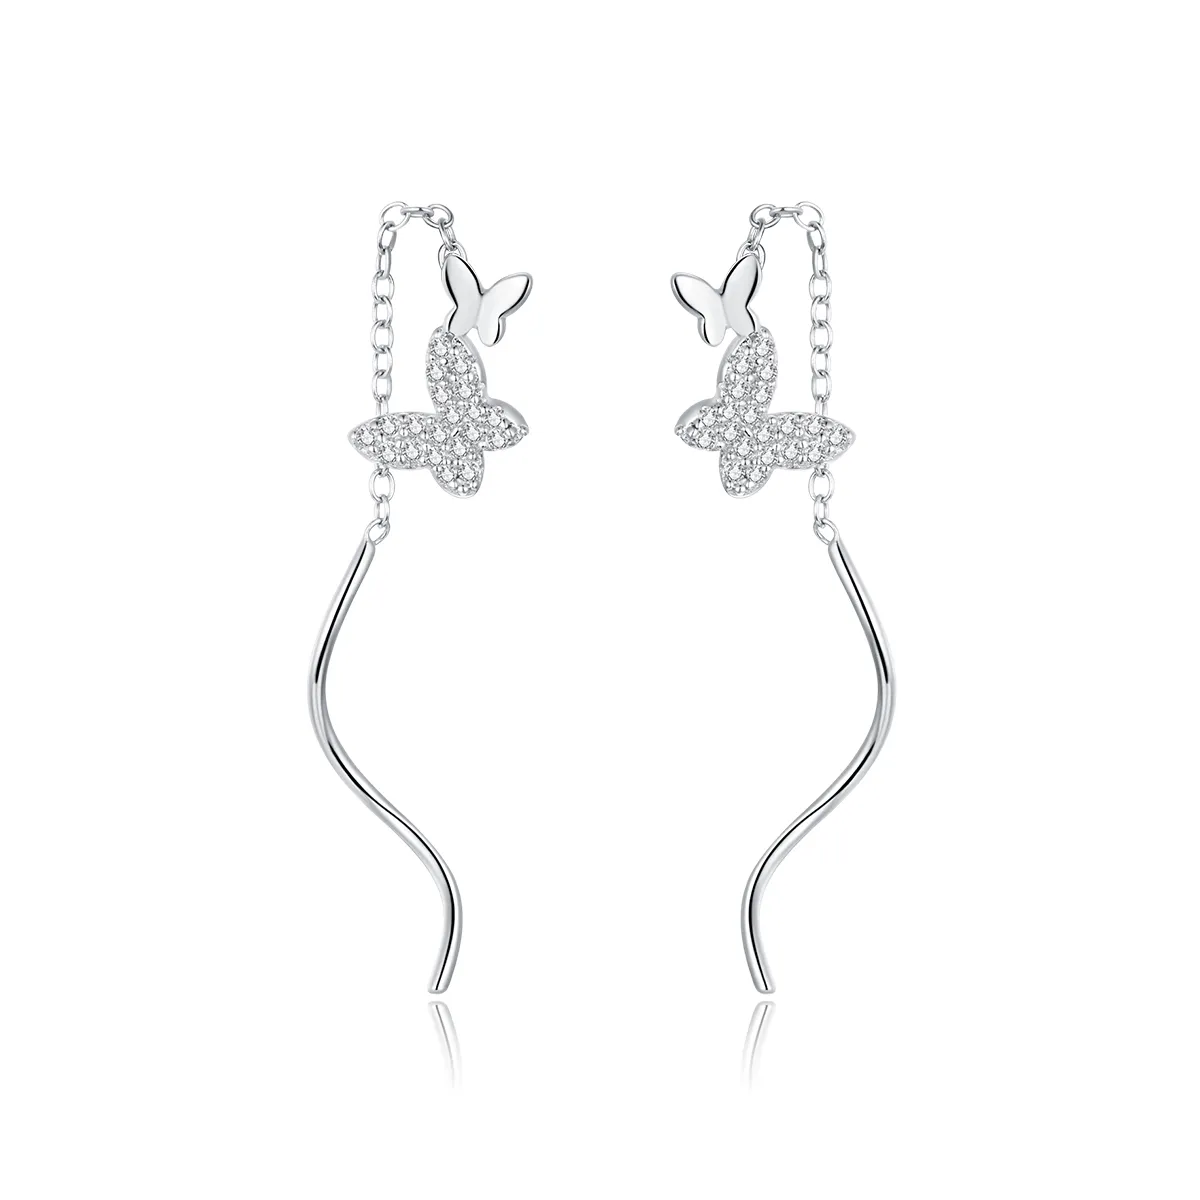 Pandora Style Silver Flying Butterflies Dangle Earrings - BSE436